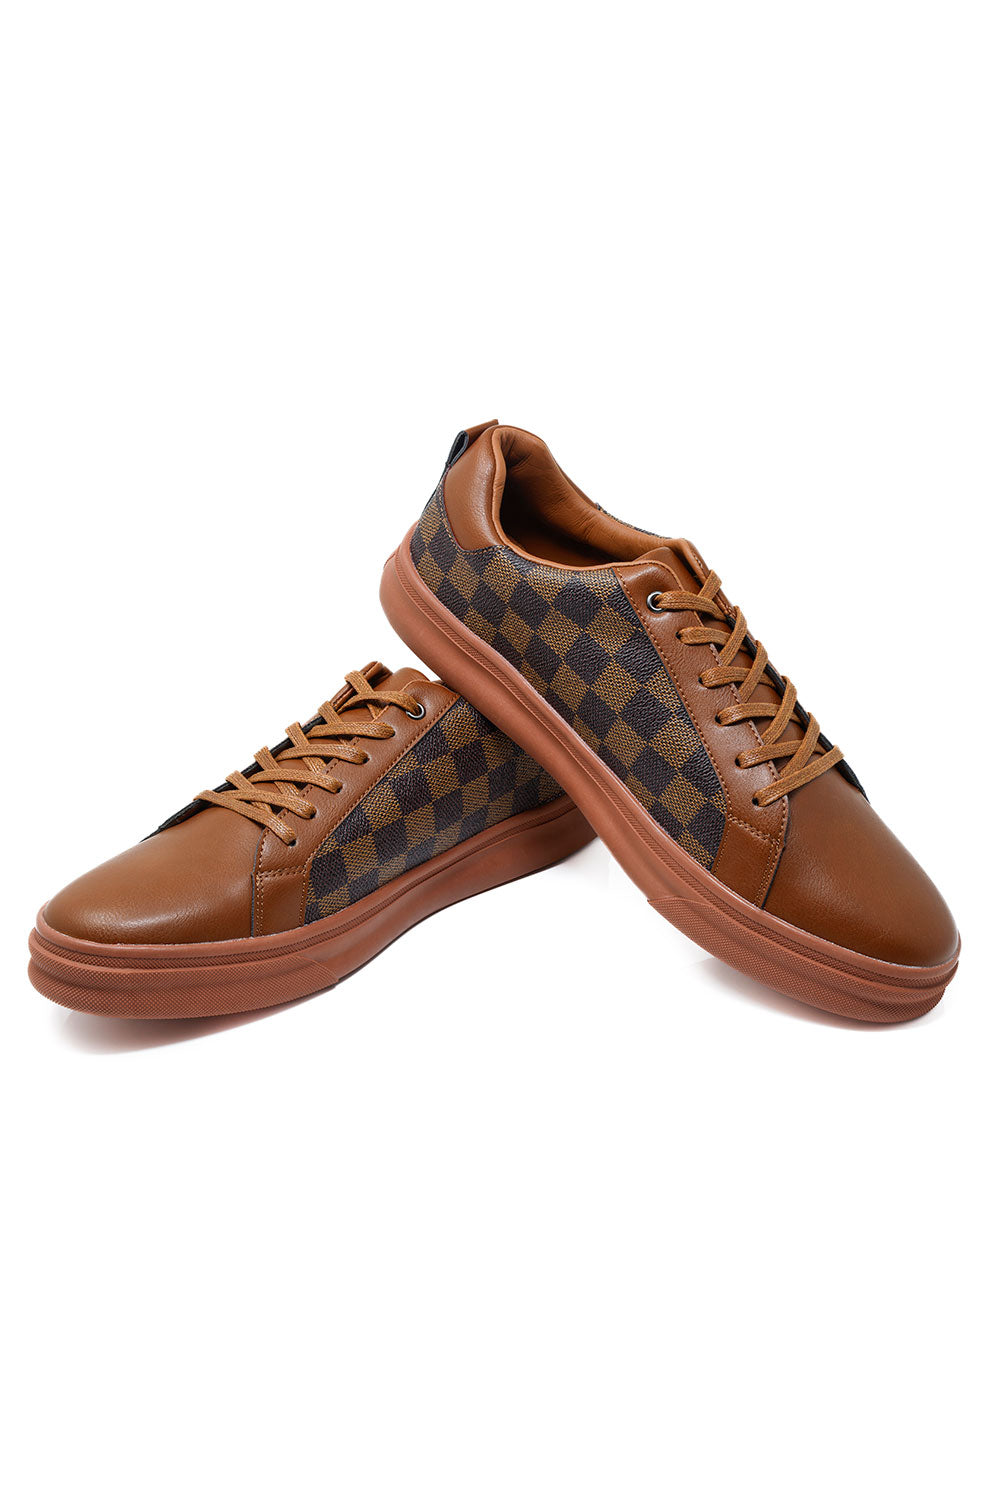 Barabas Men's Premium Checkered Running Sneakers Low Cut 4SK08 Brown